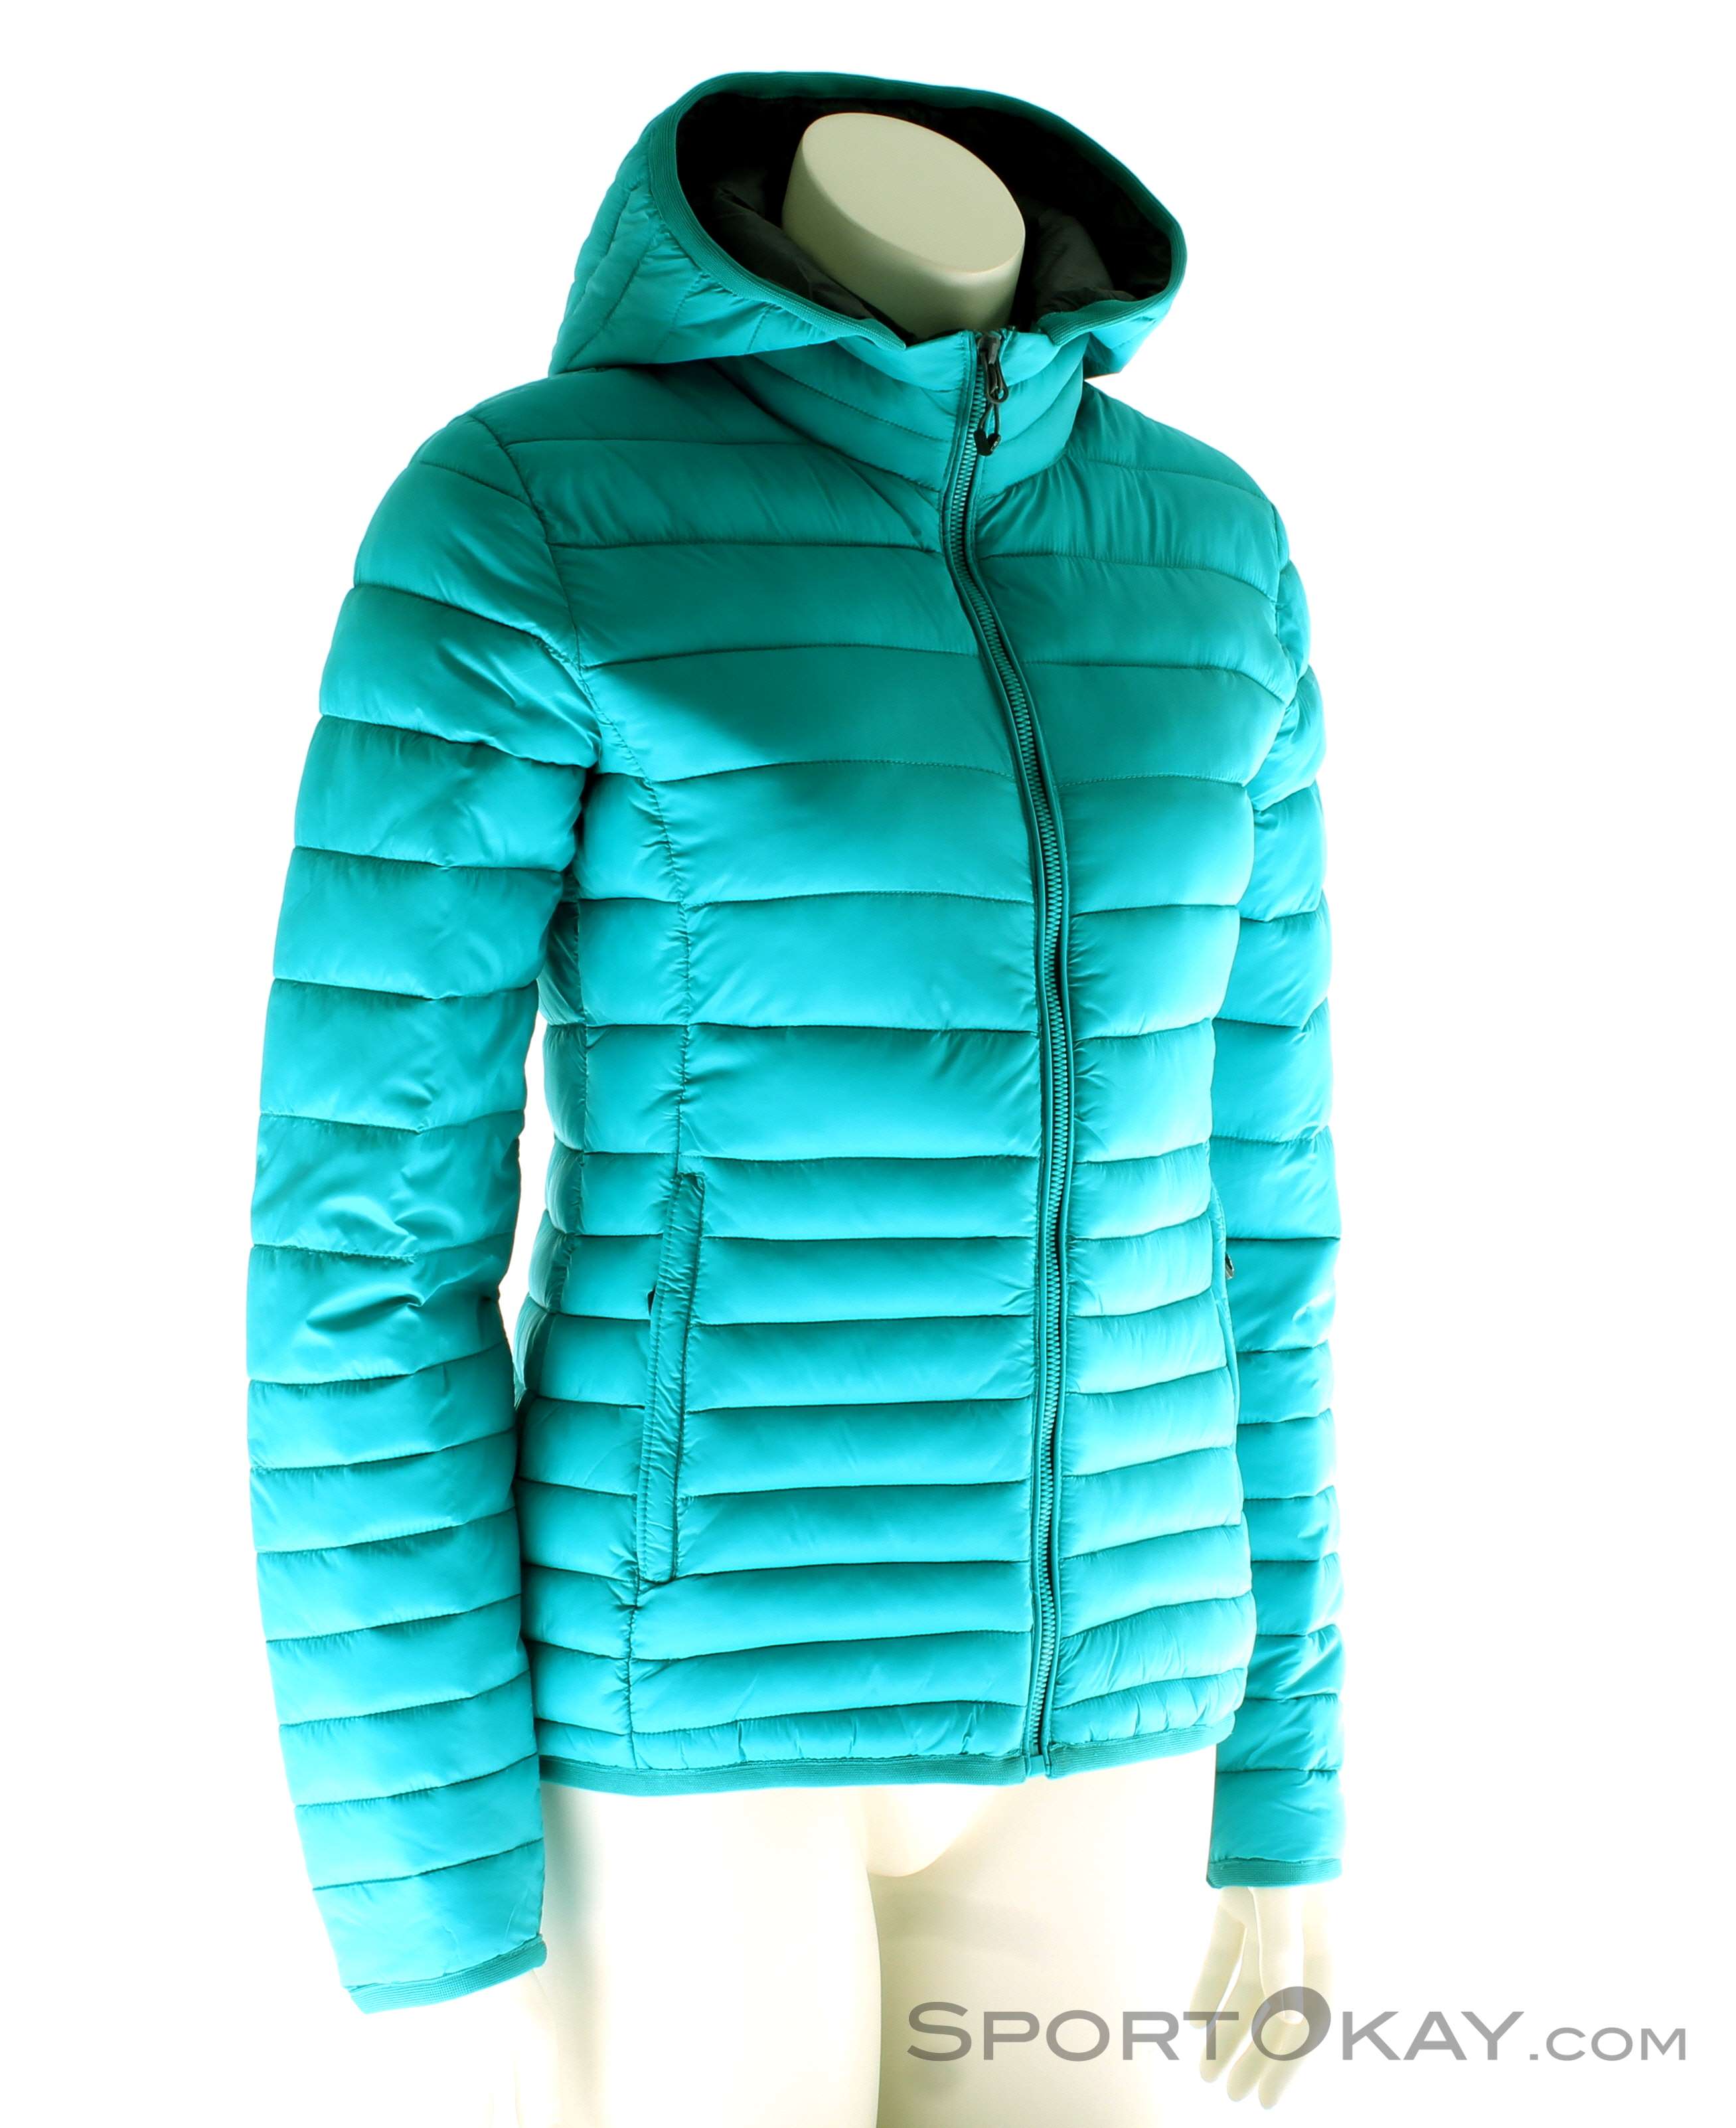 - CMP Outdoor Outdoor Jacket Outdoor Clothing - Womens - Jacket All - Jackets Zip Hood